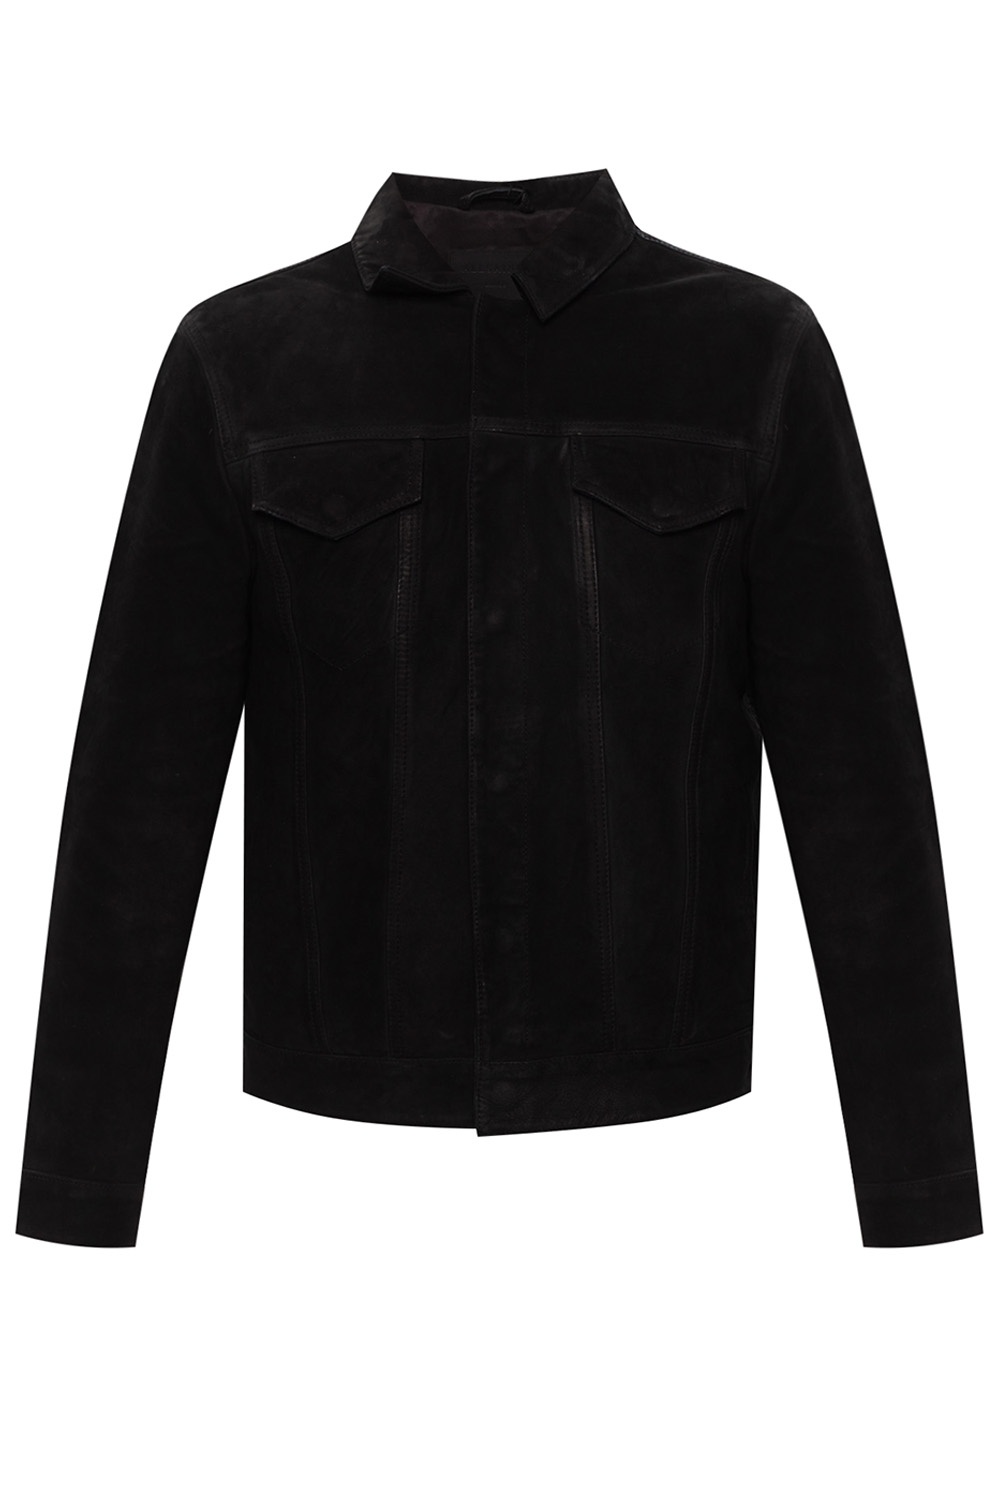 AllSaints ‘Hazel’ leather jacket | Men's Clothing | Vitkac